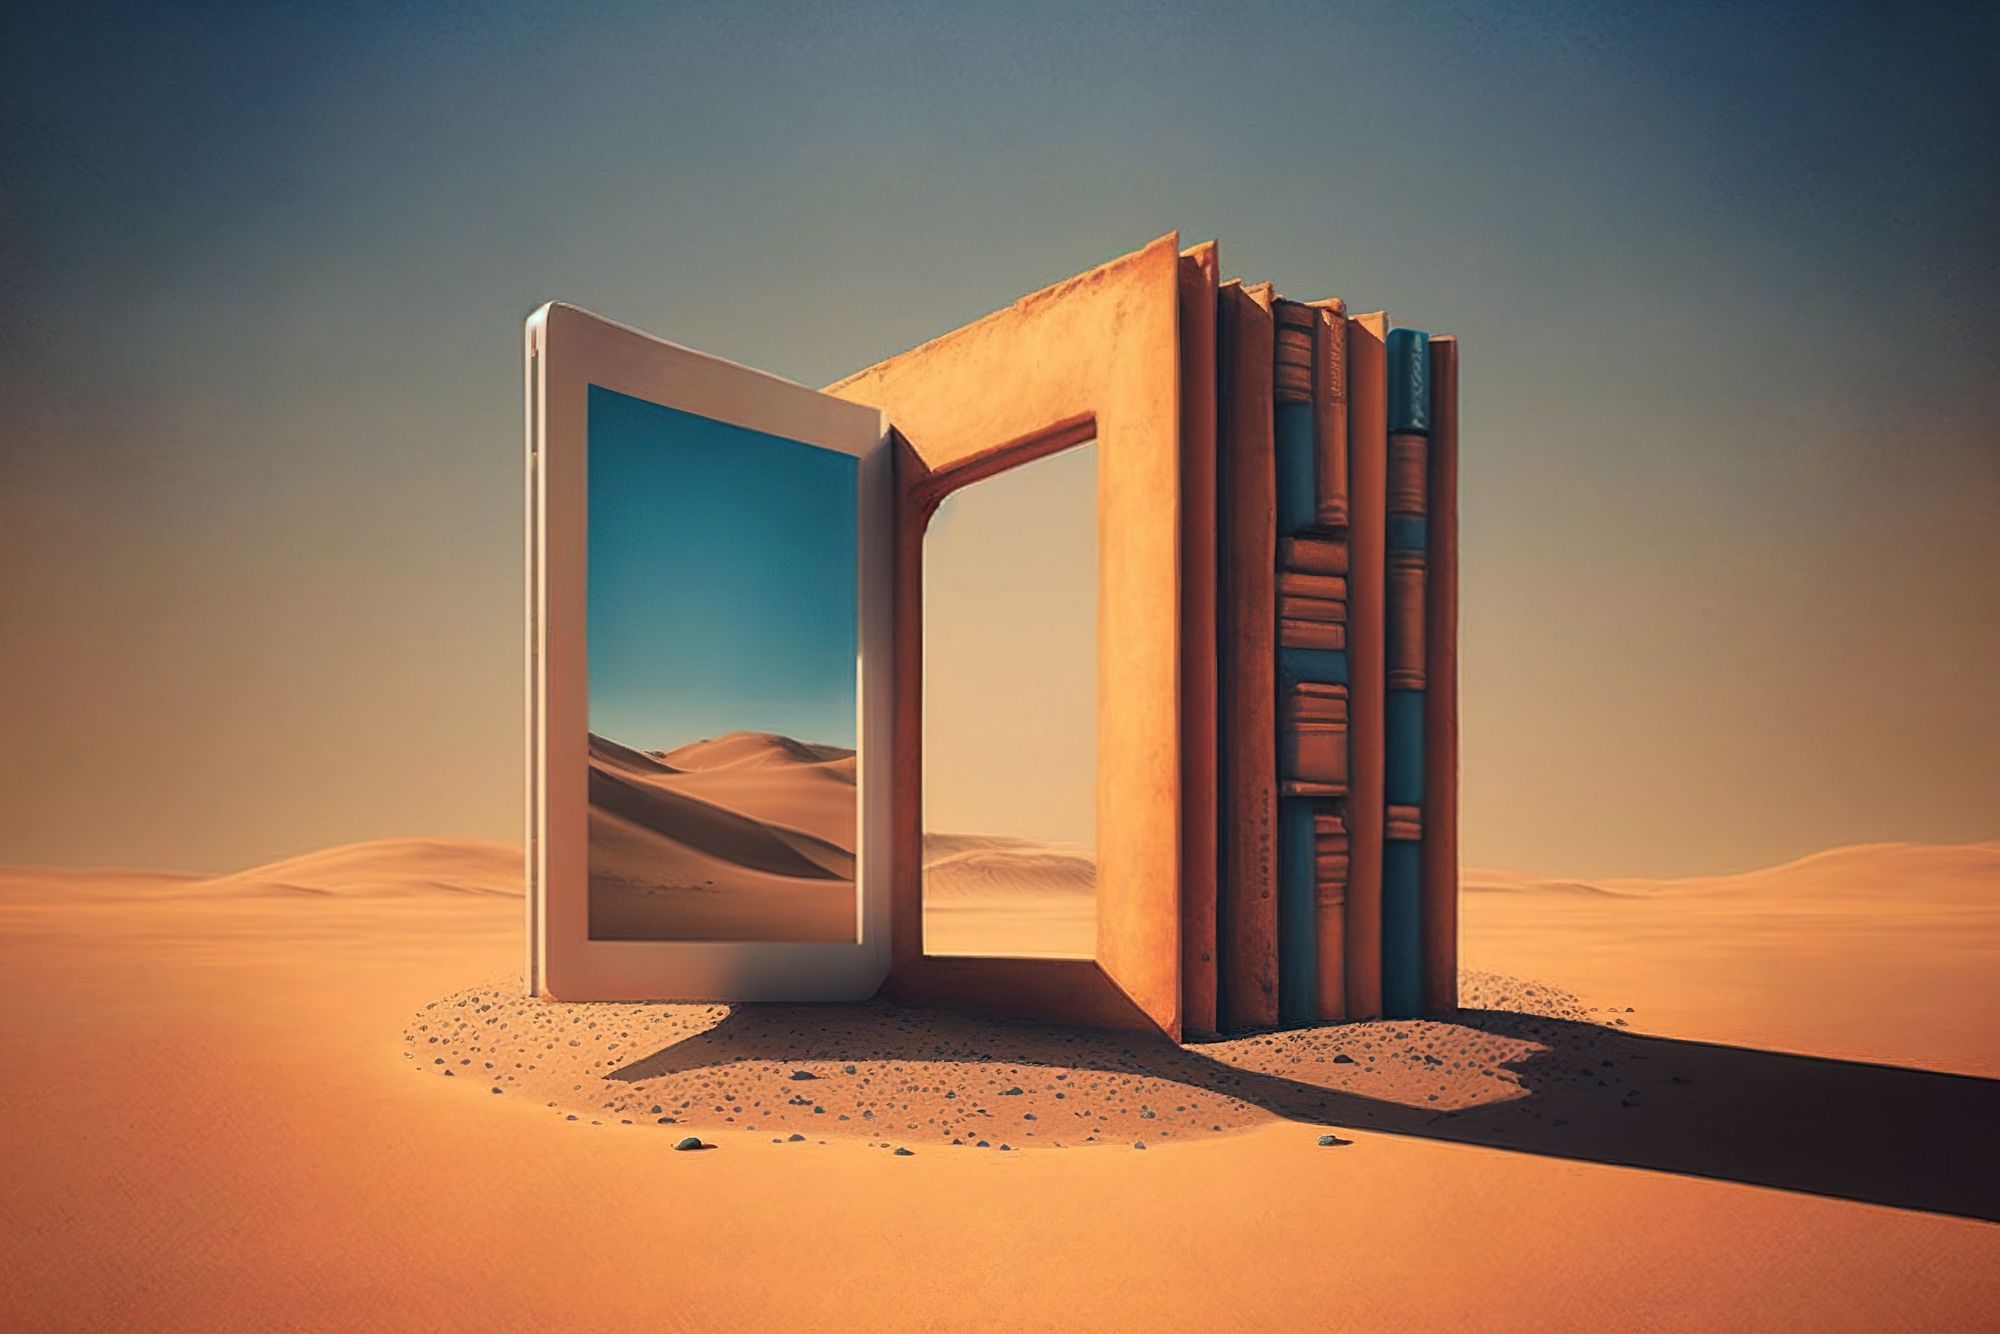 Une illustration conceptuelle qui représente l’accès restreint à la technologie et à l’information. L’image montre un paysage désertique sur lequel se découpe une arche composée de livres et d’une tablette électronique qui lui tient lieu de porte. 